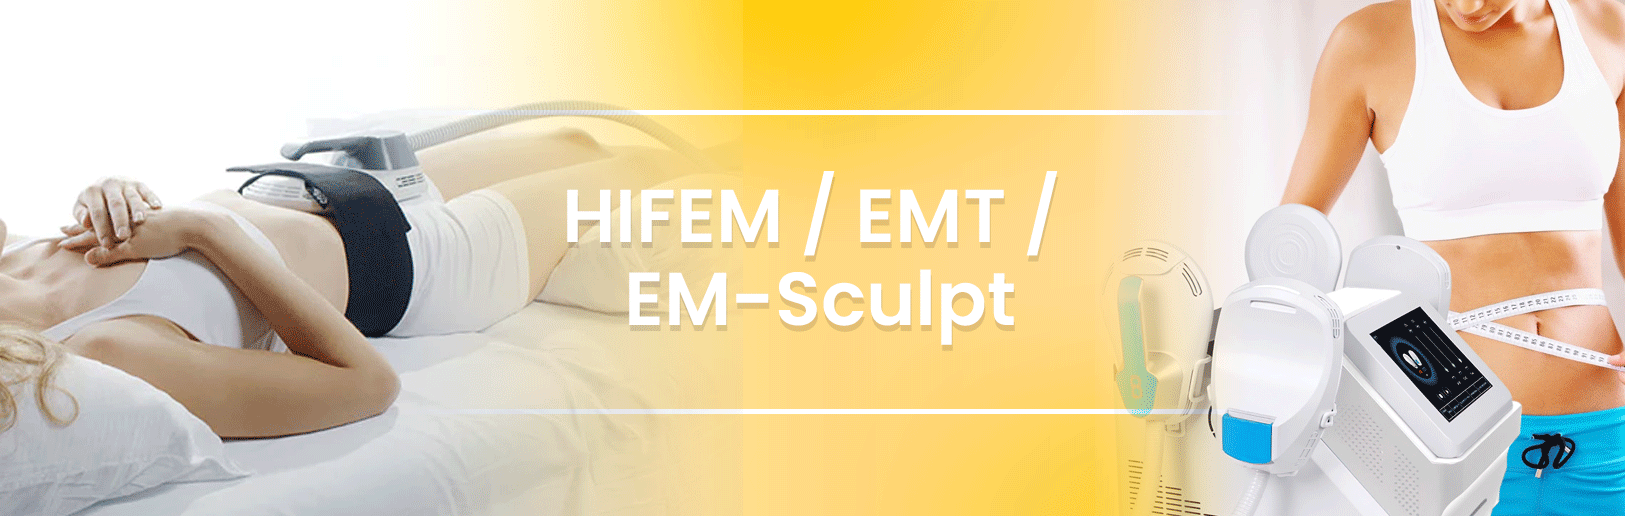 HIFEM / EMT / EM-Sculpt﻿ machines